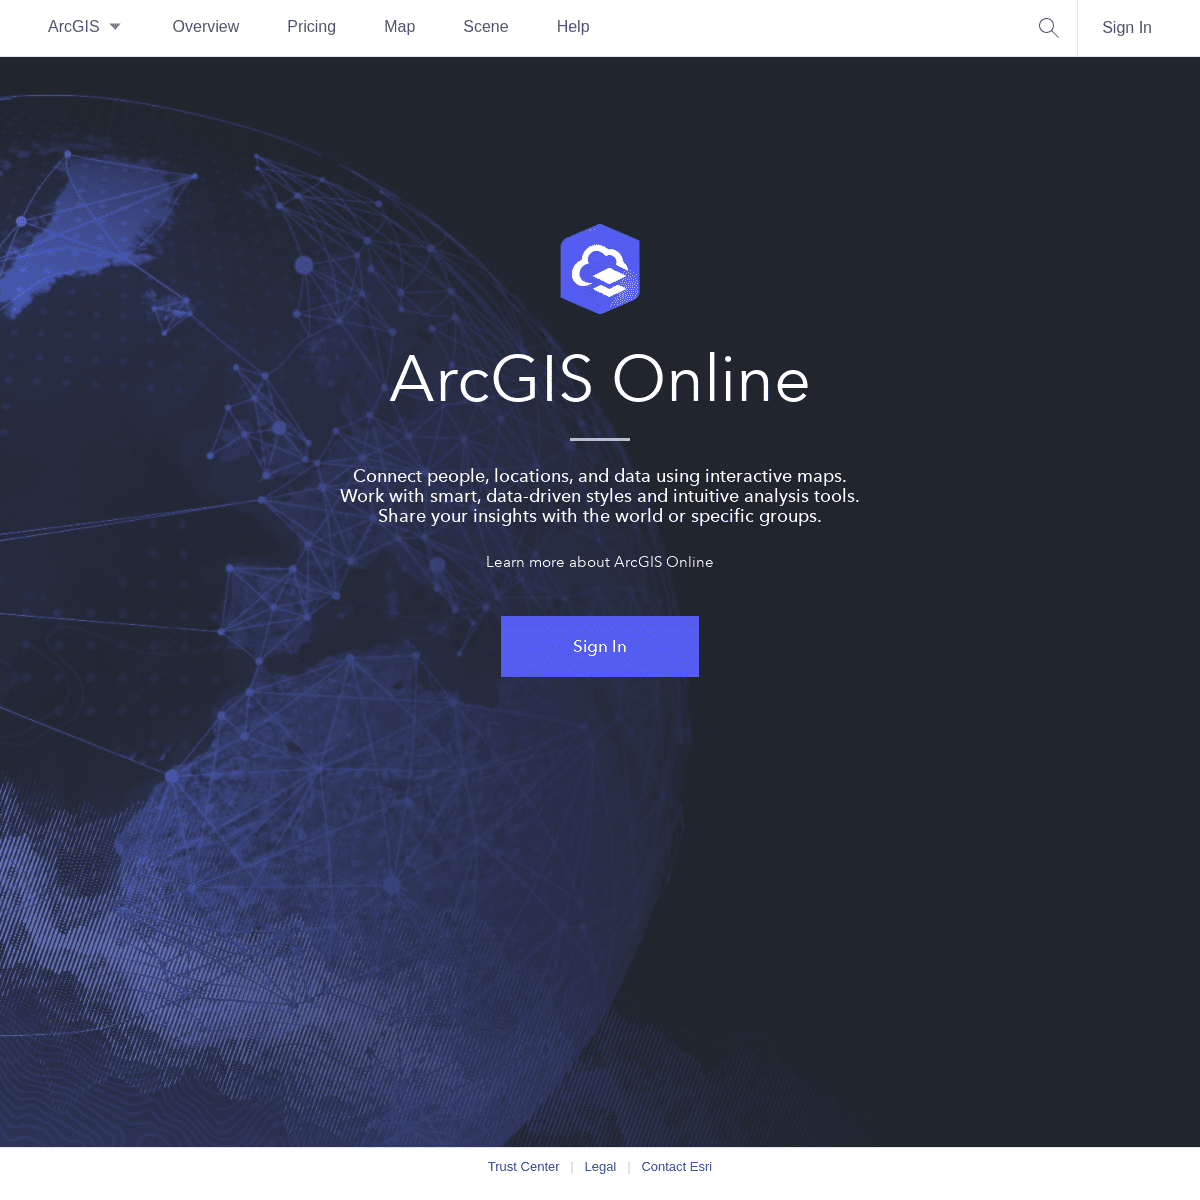 A complete backup of arcgisonline.com